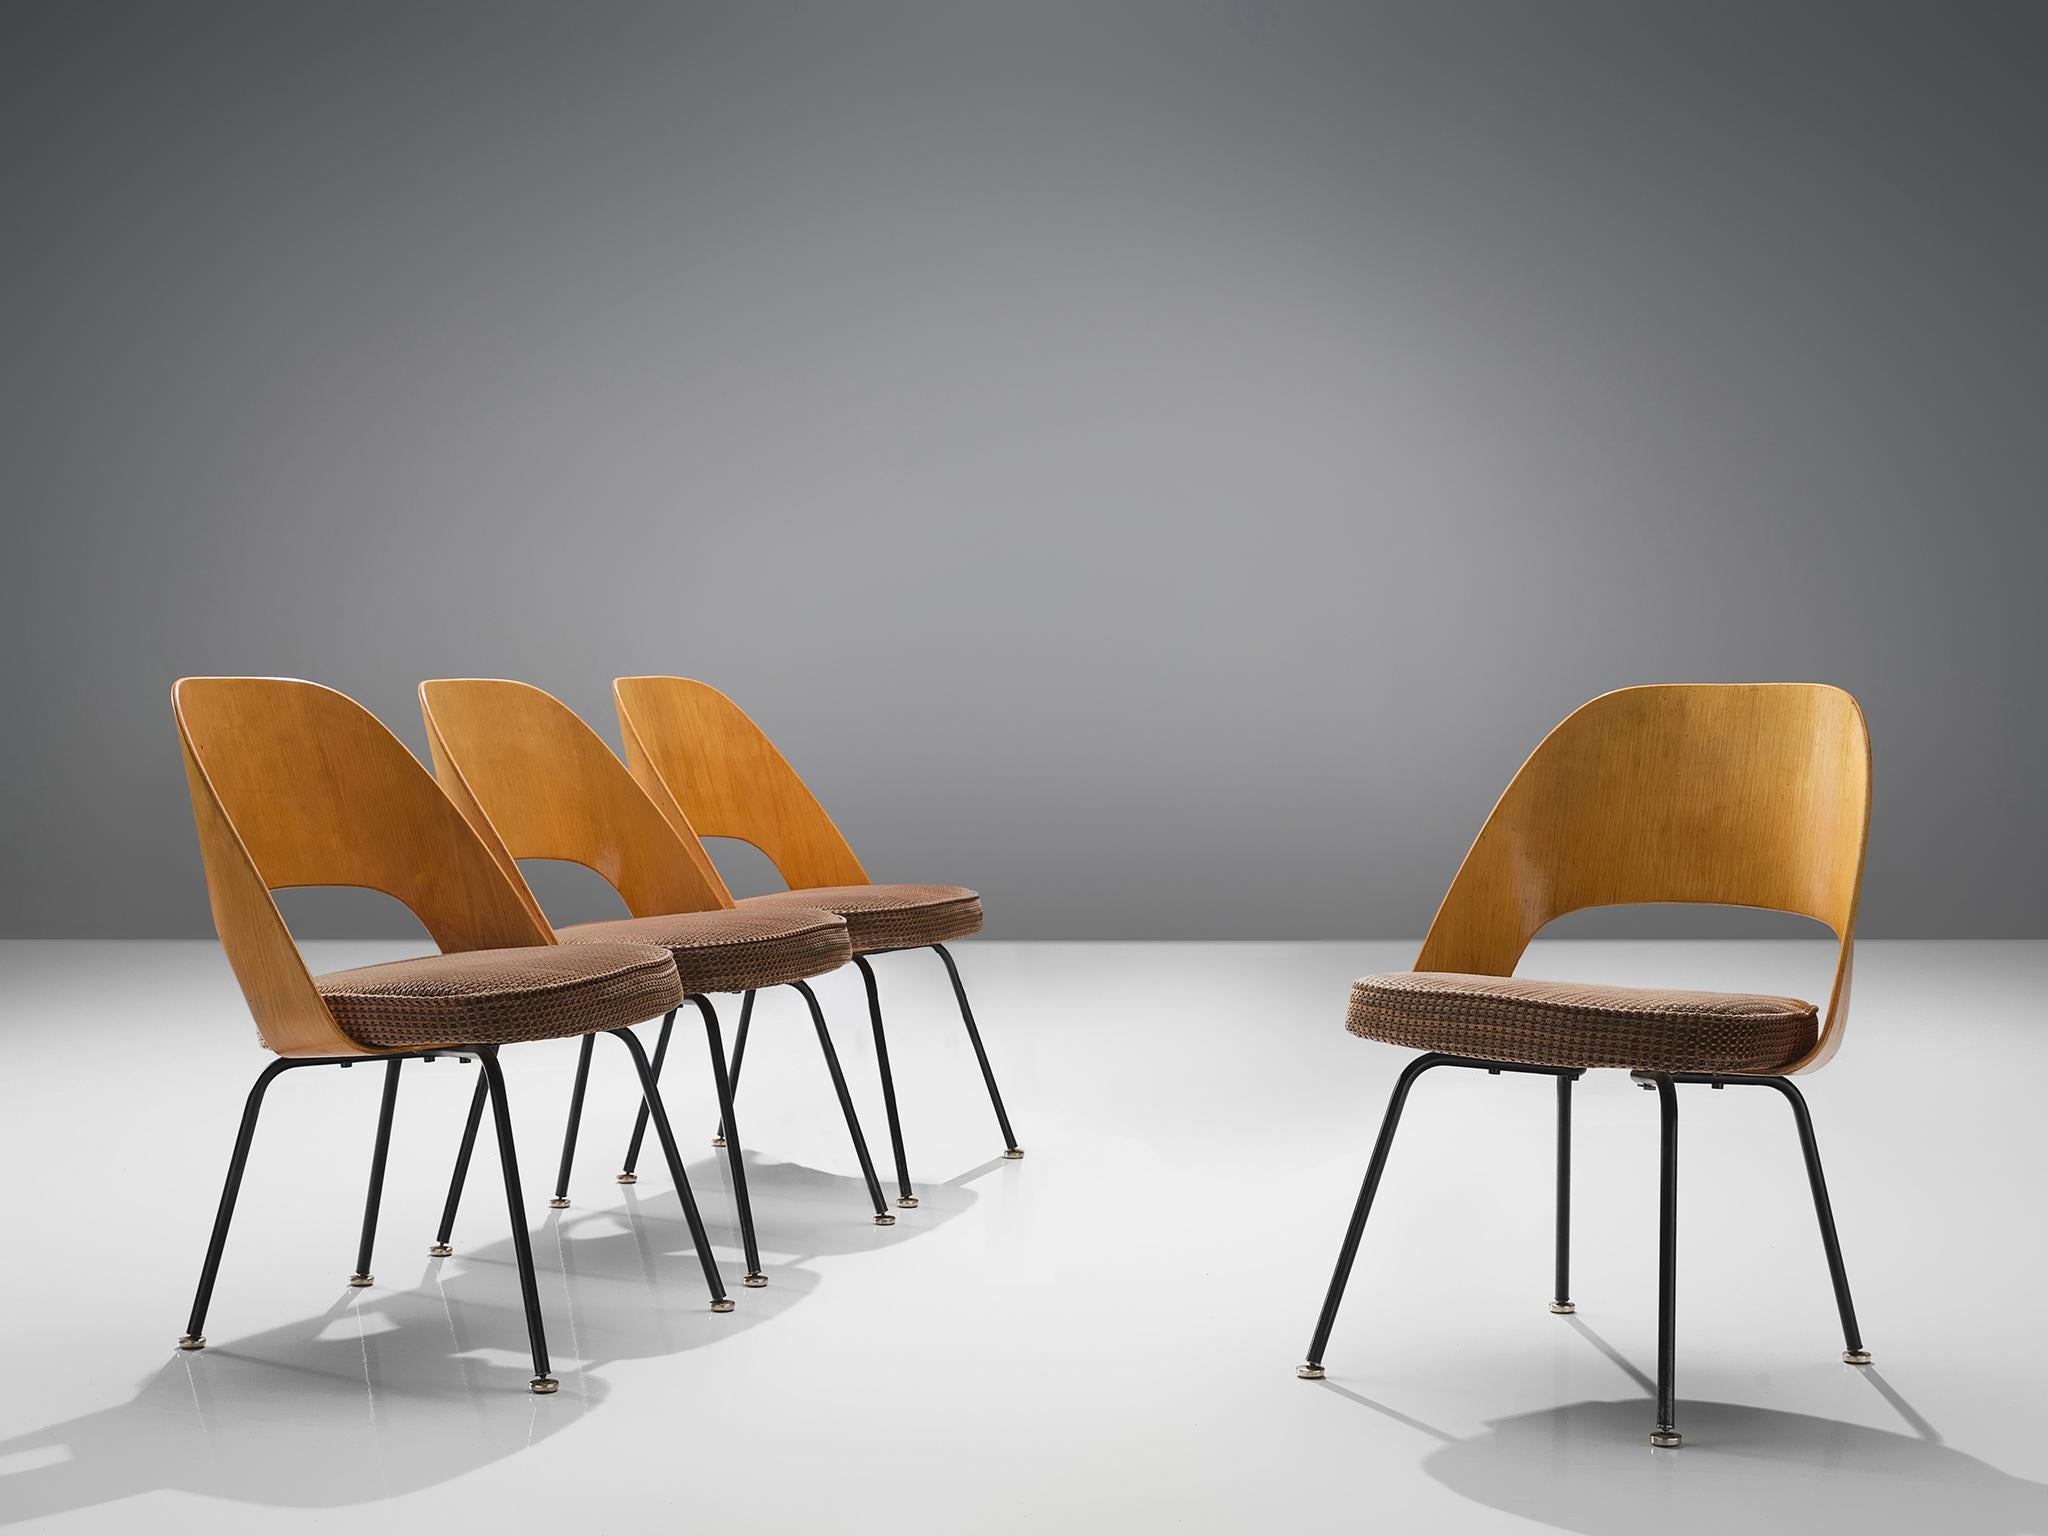 Eero Saarinen für Knoll International, Satz von vier Esszimmerstühlen, beschichtetes Eisen, Sperrholz, Samt, Vereinigte Staaten / Belgien, Entwurf 1948, Produktion 1960er Jahre

Vier organisch geformte Stühle, entworfen von Eero Saarinen. Dieses